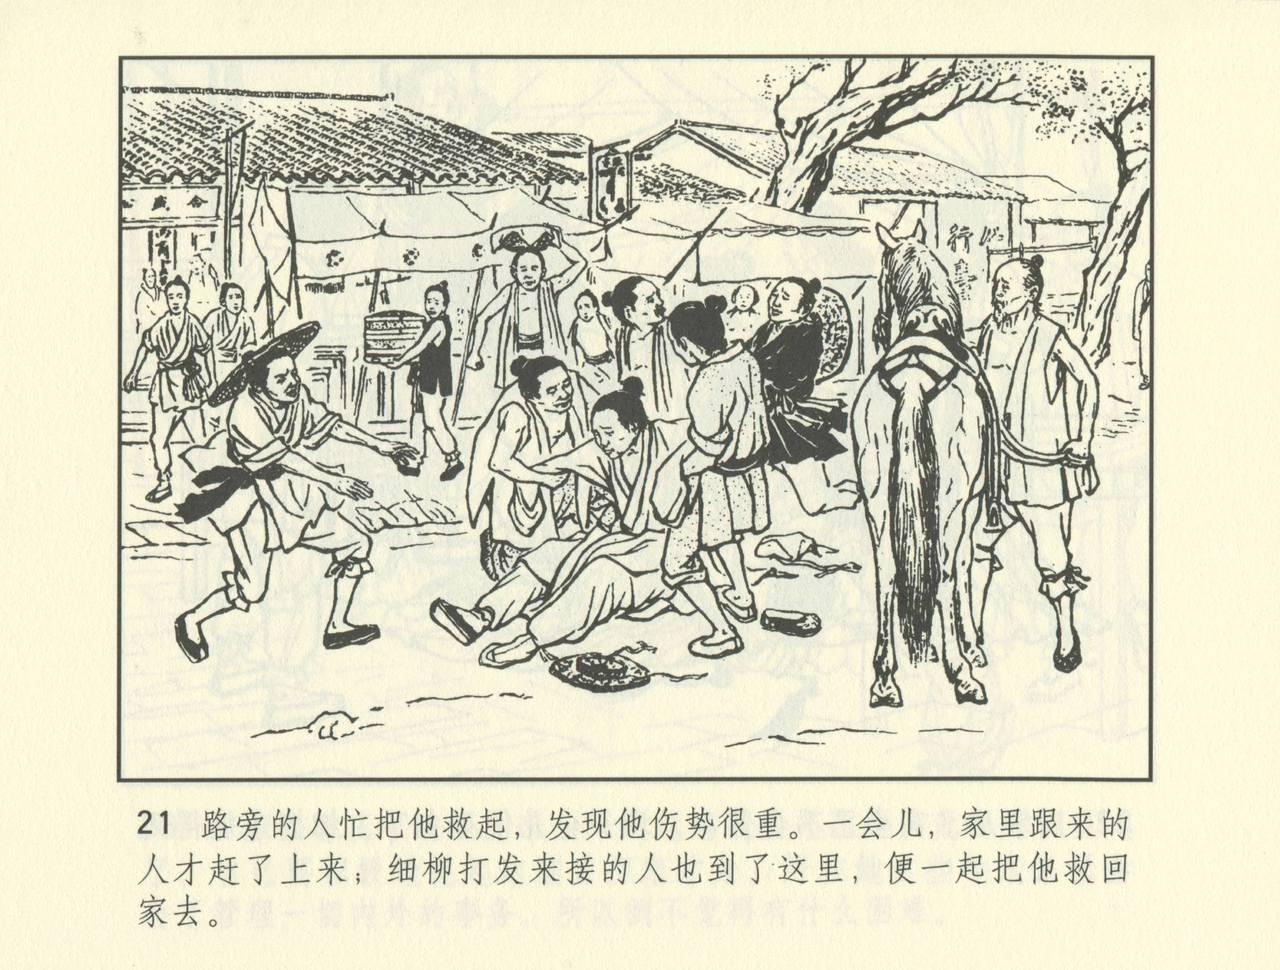 聊斋志异 张玮等绘 天津人民美术出版社 卷二十一 ~ 三十 493